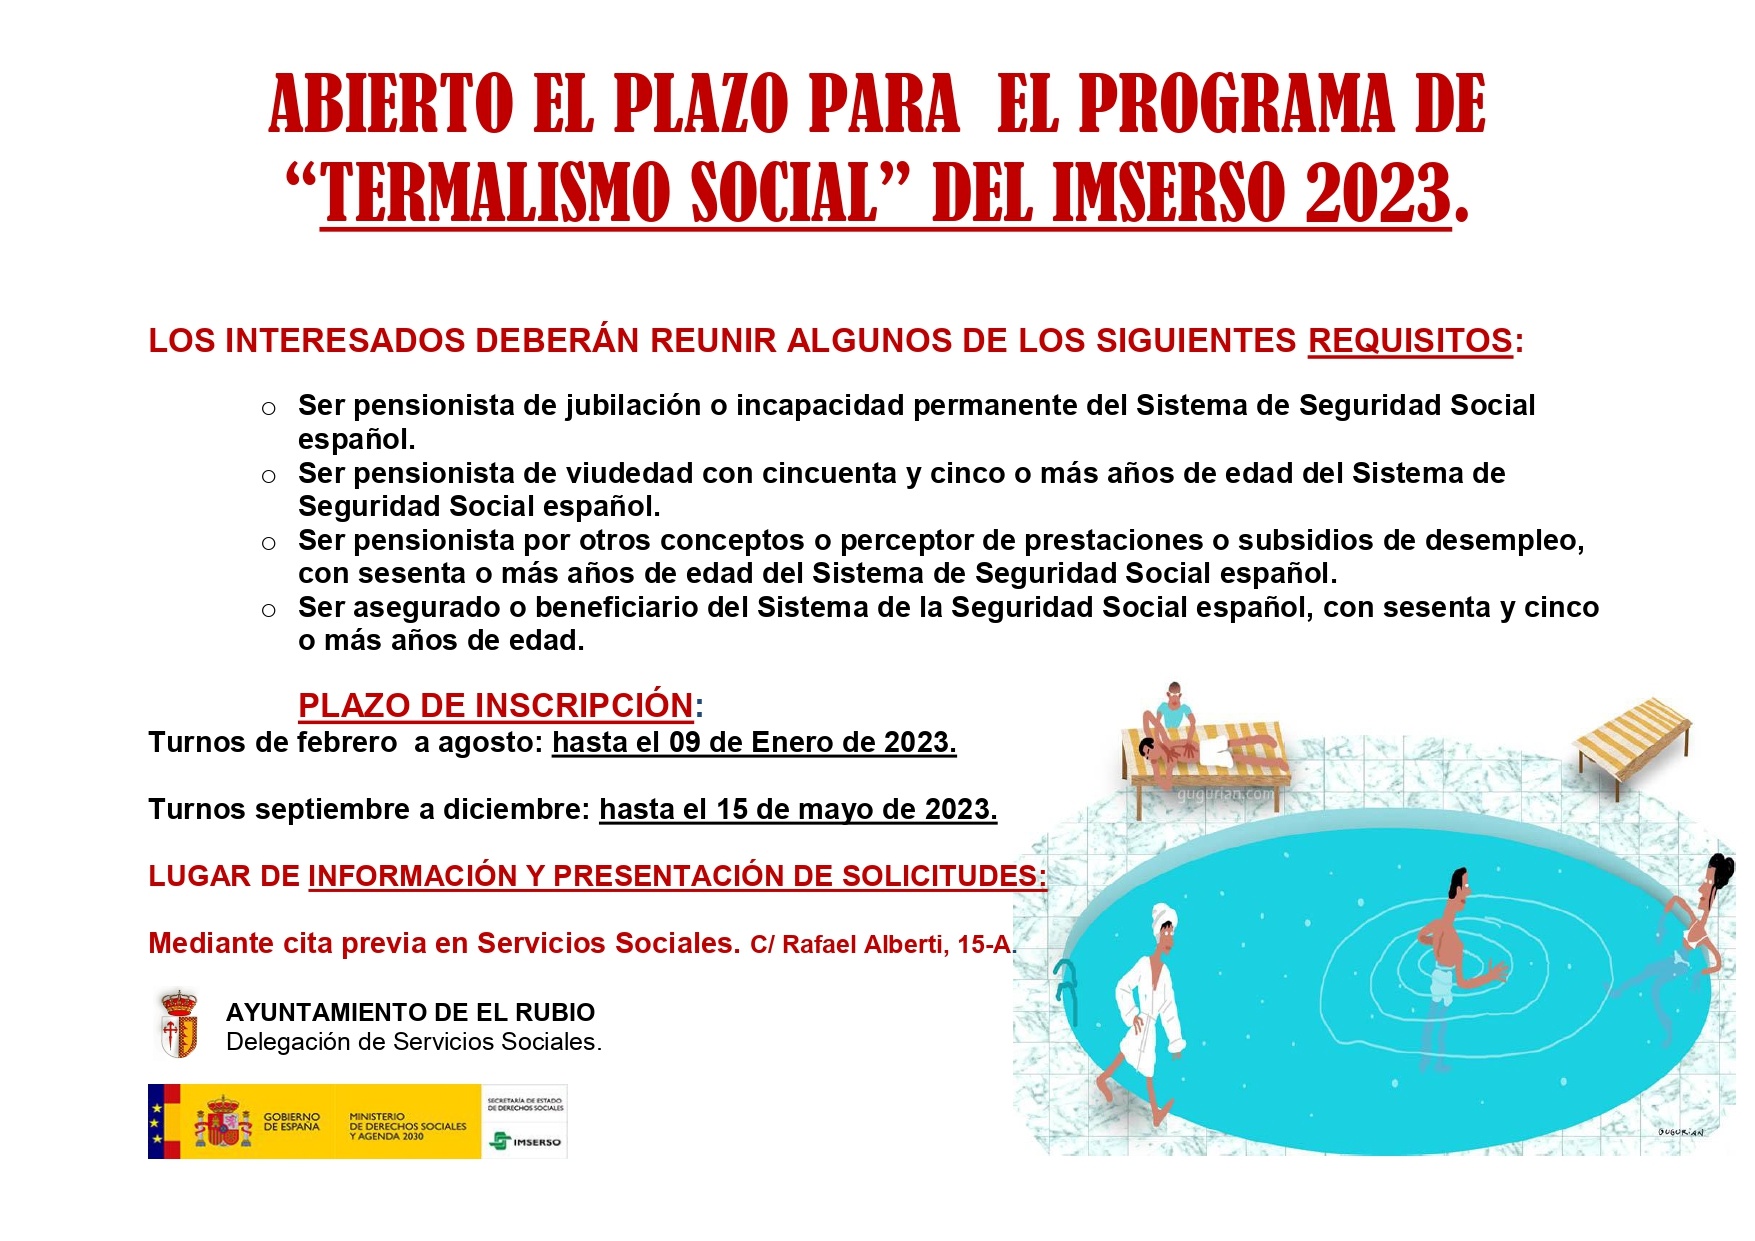 ABIERTO EL PLAZO PARA EL PROGRAMA DE ¿TERMALISMO SOCIAL¿ DEL IMSERSO 2023